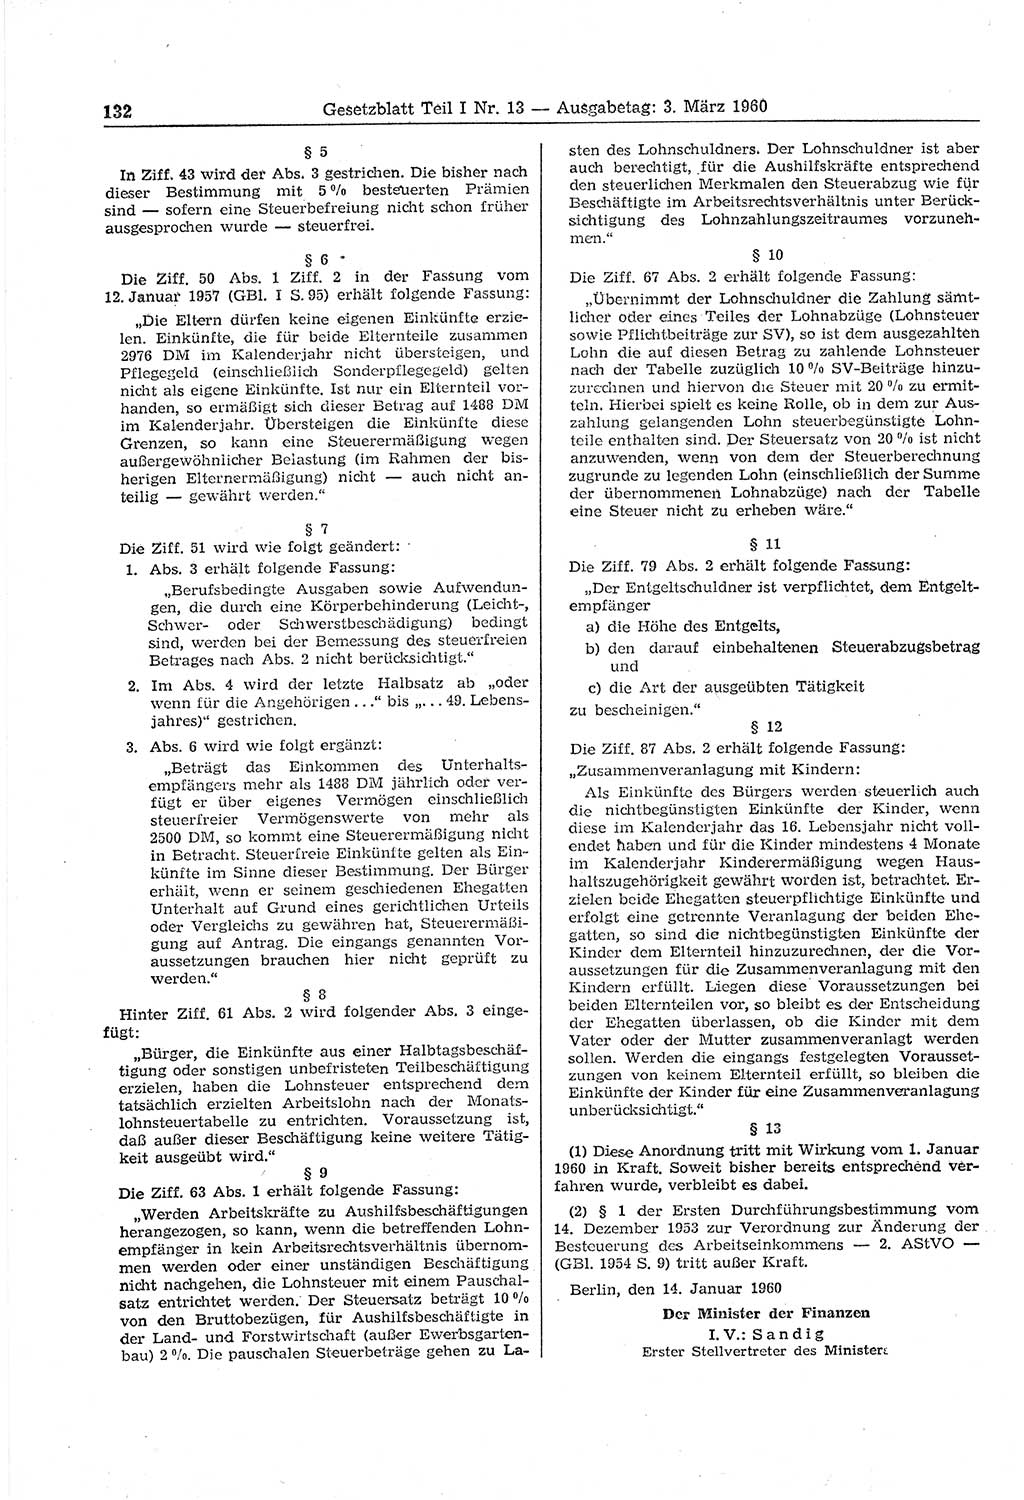 Gesetzblatt (GBl.) der Deutschen Demokratischen Republik (DDR) Teil Ⅰ 1960, Seite 132 (GBl. DDR Ⅰ 1960, S. 132)